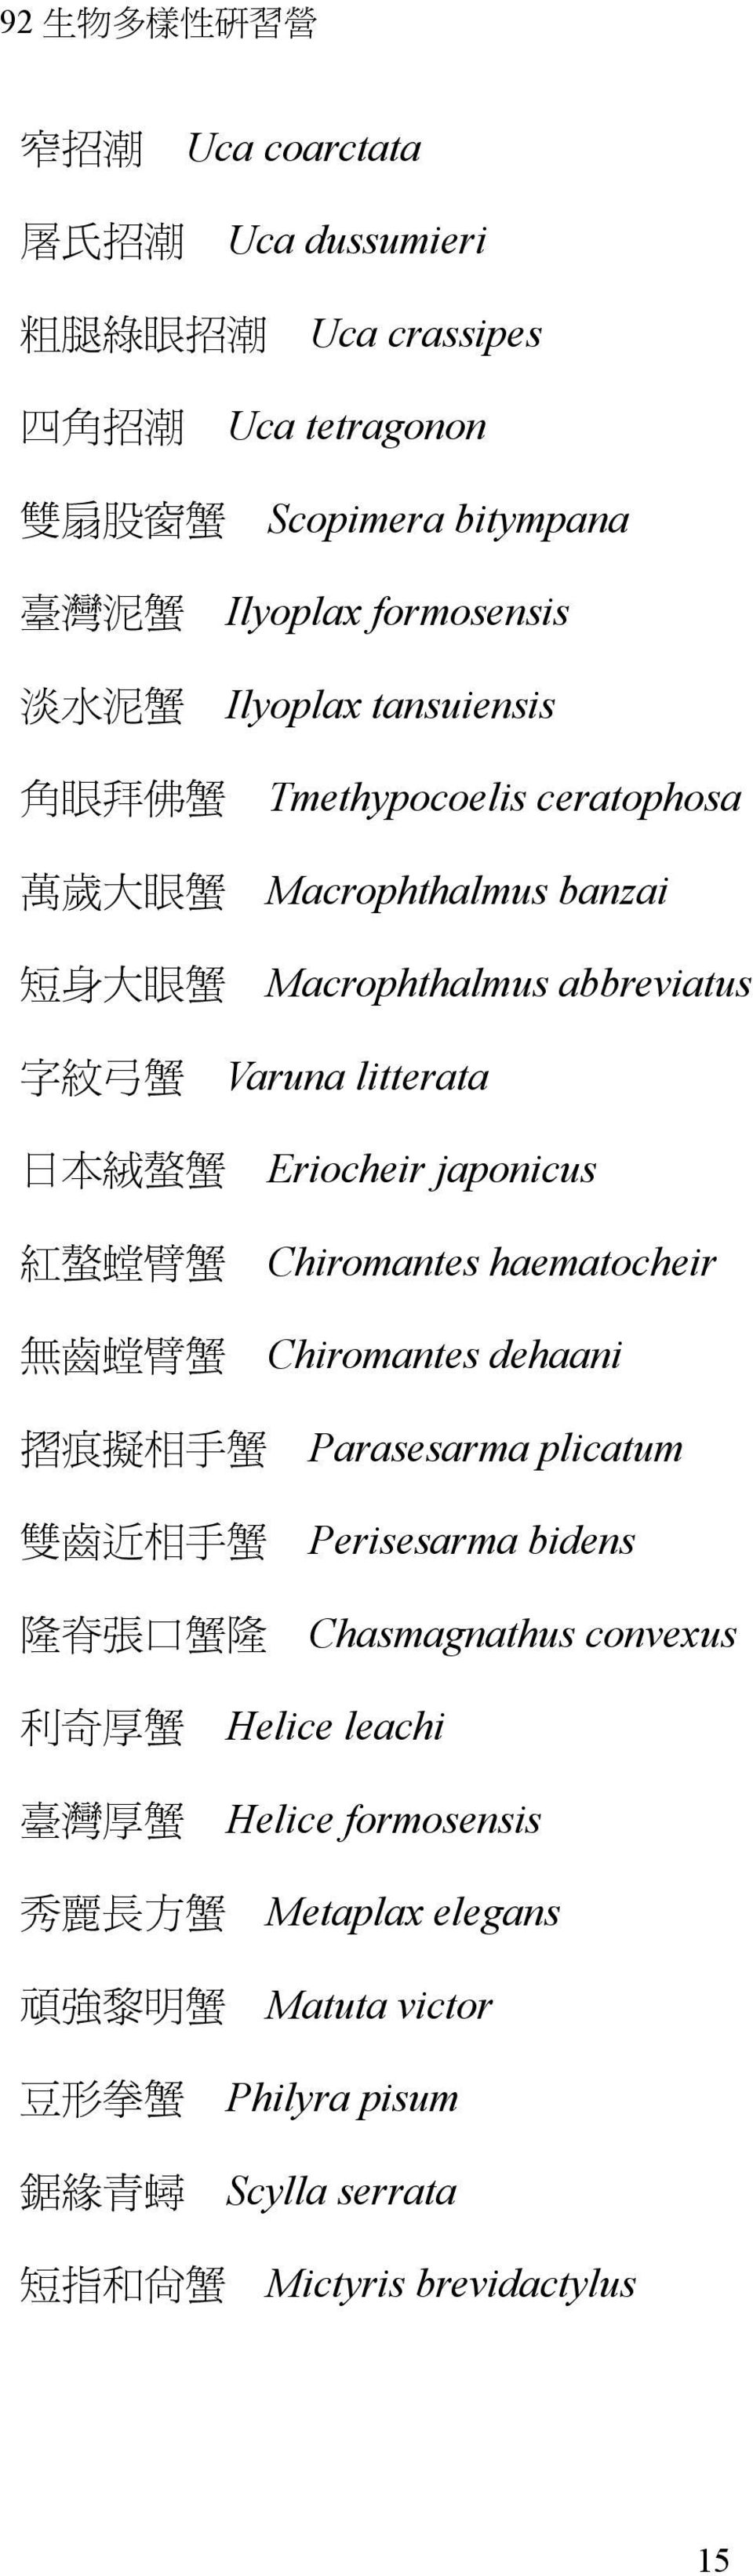 japonicus Chiromantes haematocheir Chiromantes dehaani Parasesarma plicatum Perisesarma bidens Chasmagnathus